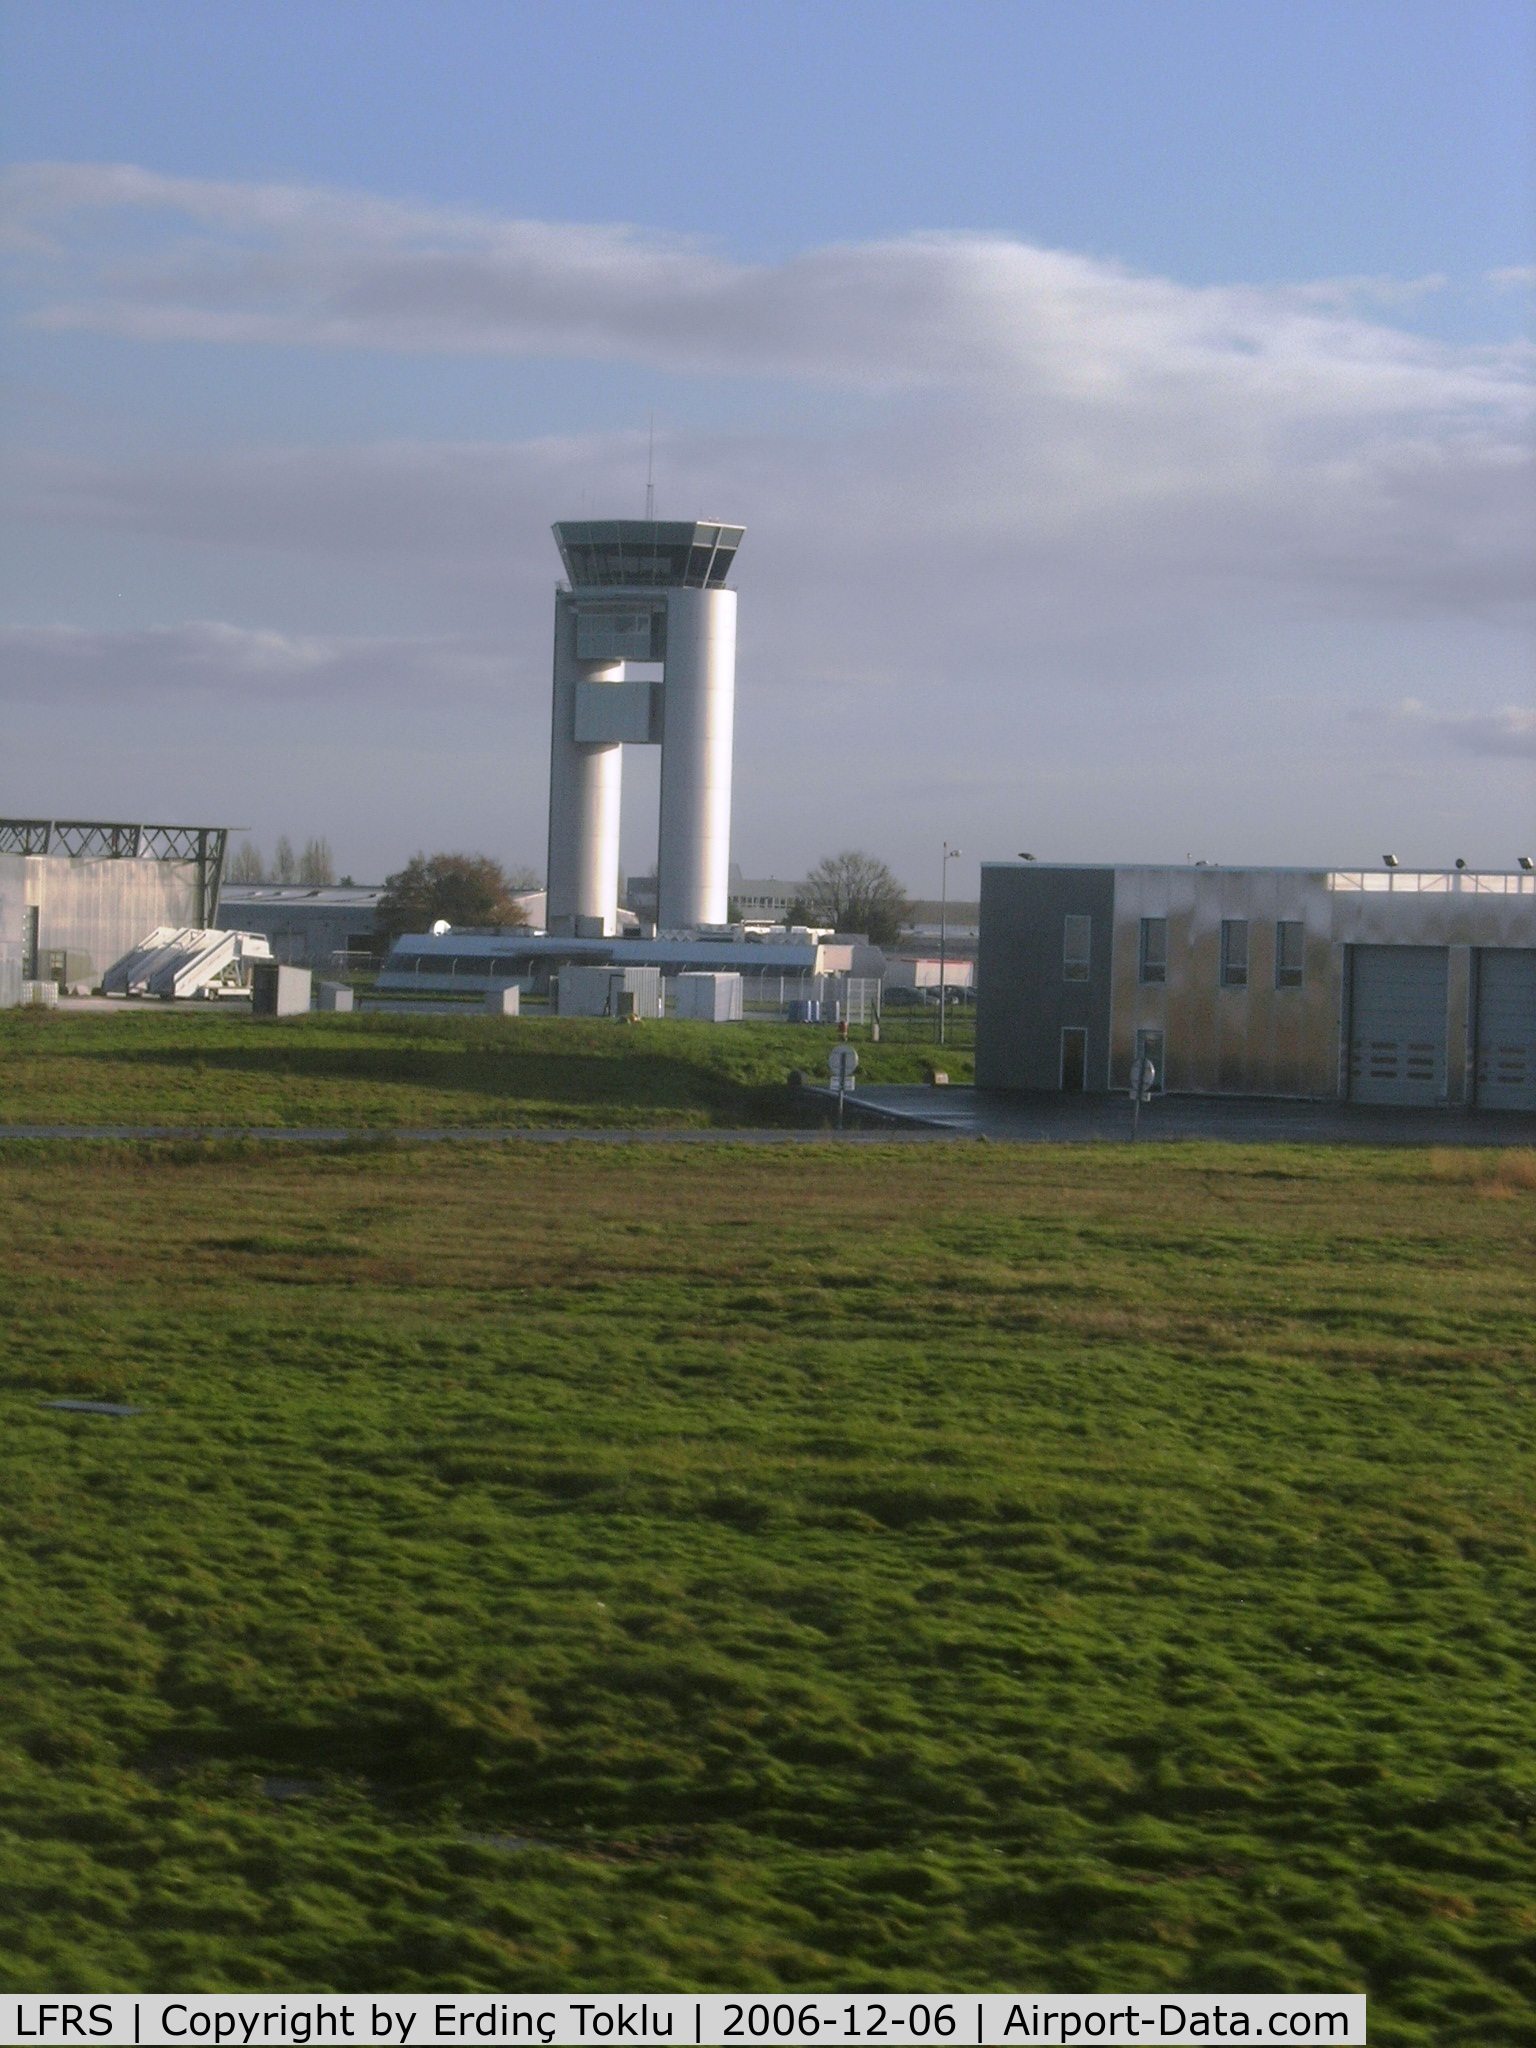 Nantes Atlantique Airport (formerly Aéroport Château Bougon), Nantes France (LFRS) - Nantes tower.